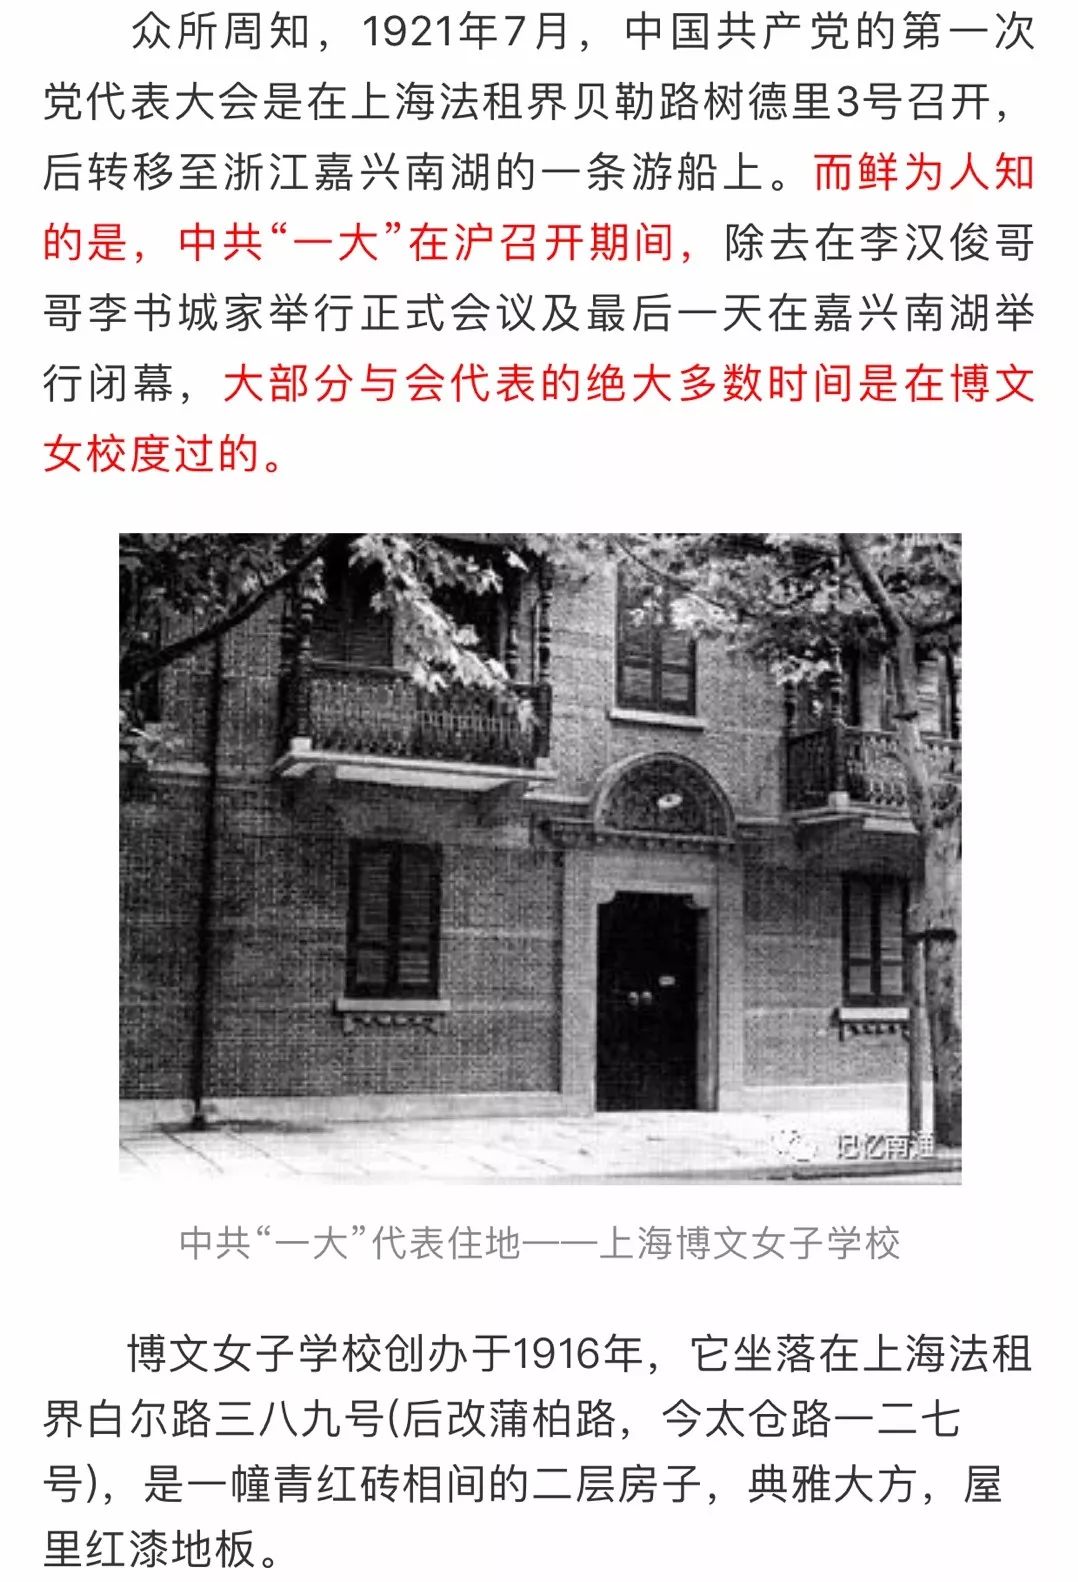 中共一大代表的住地上海博文女校竟与南通有这样的渊源